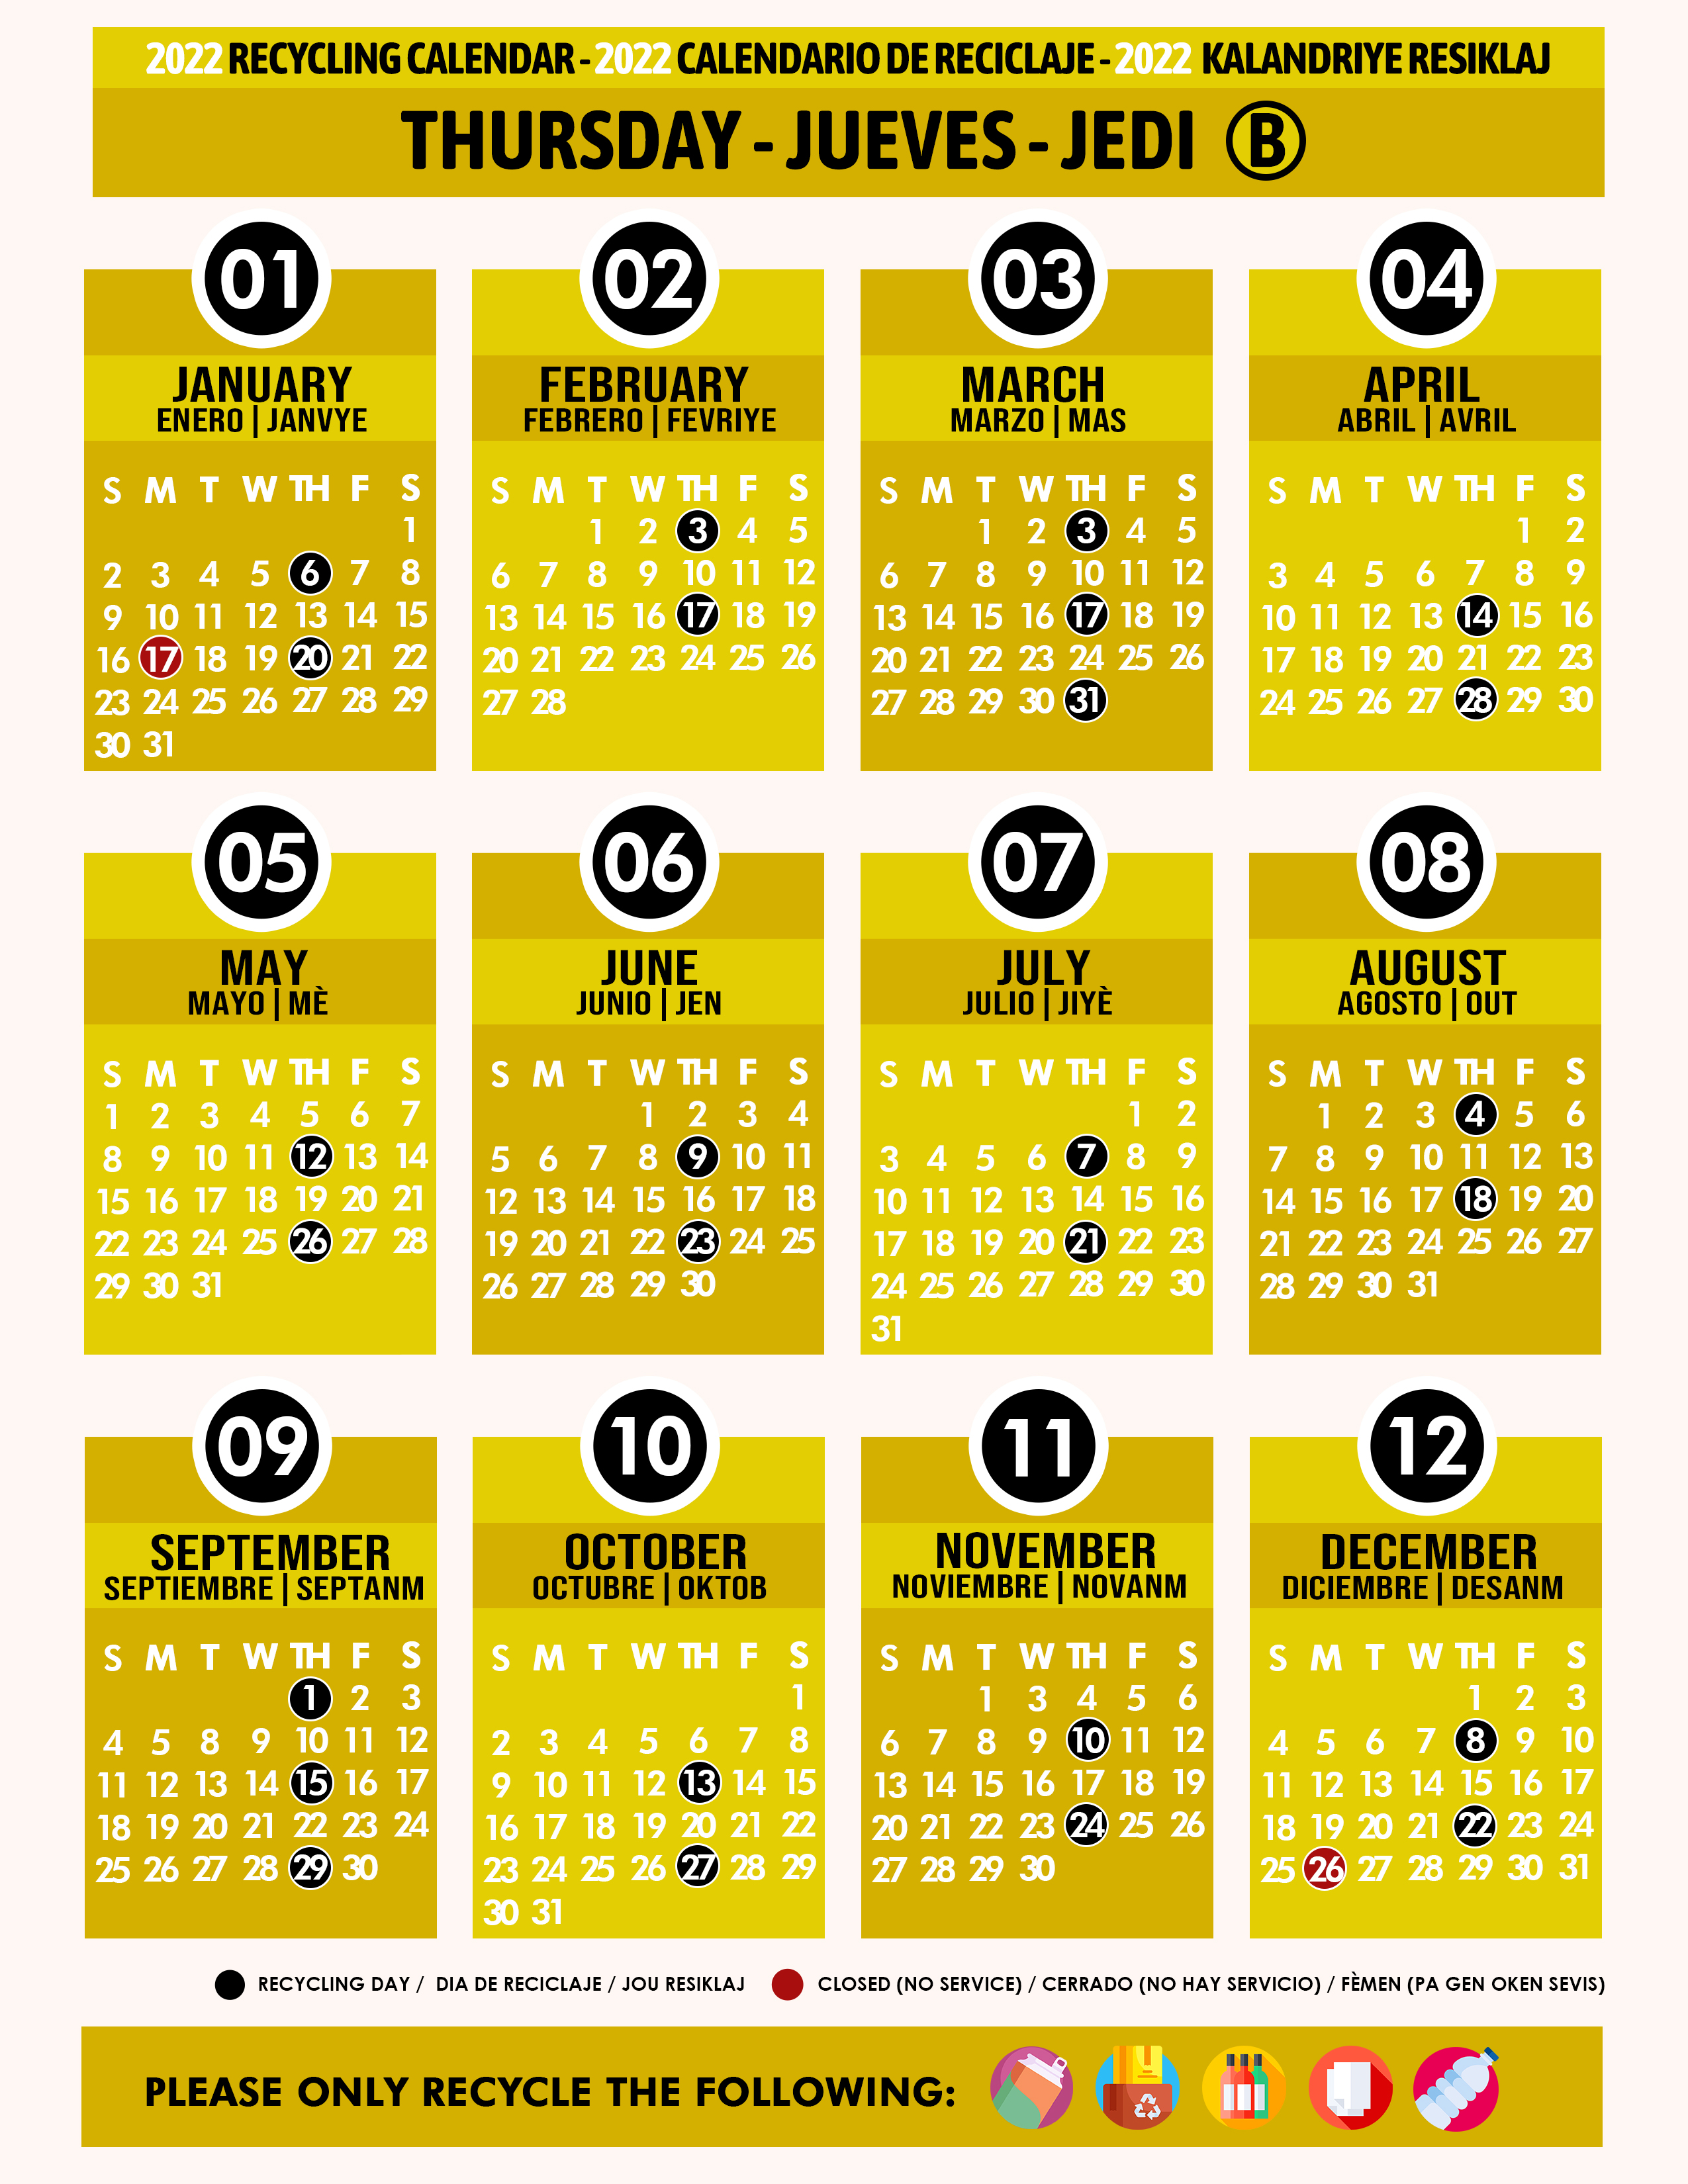 Mdc Calendar 2022 Recycling Calendar 2022 Thursday B Yellow - Miami